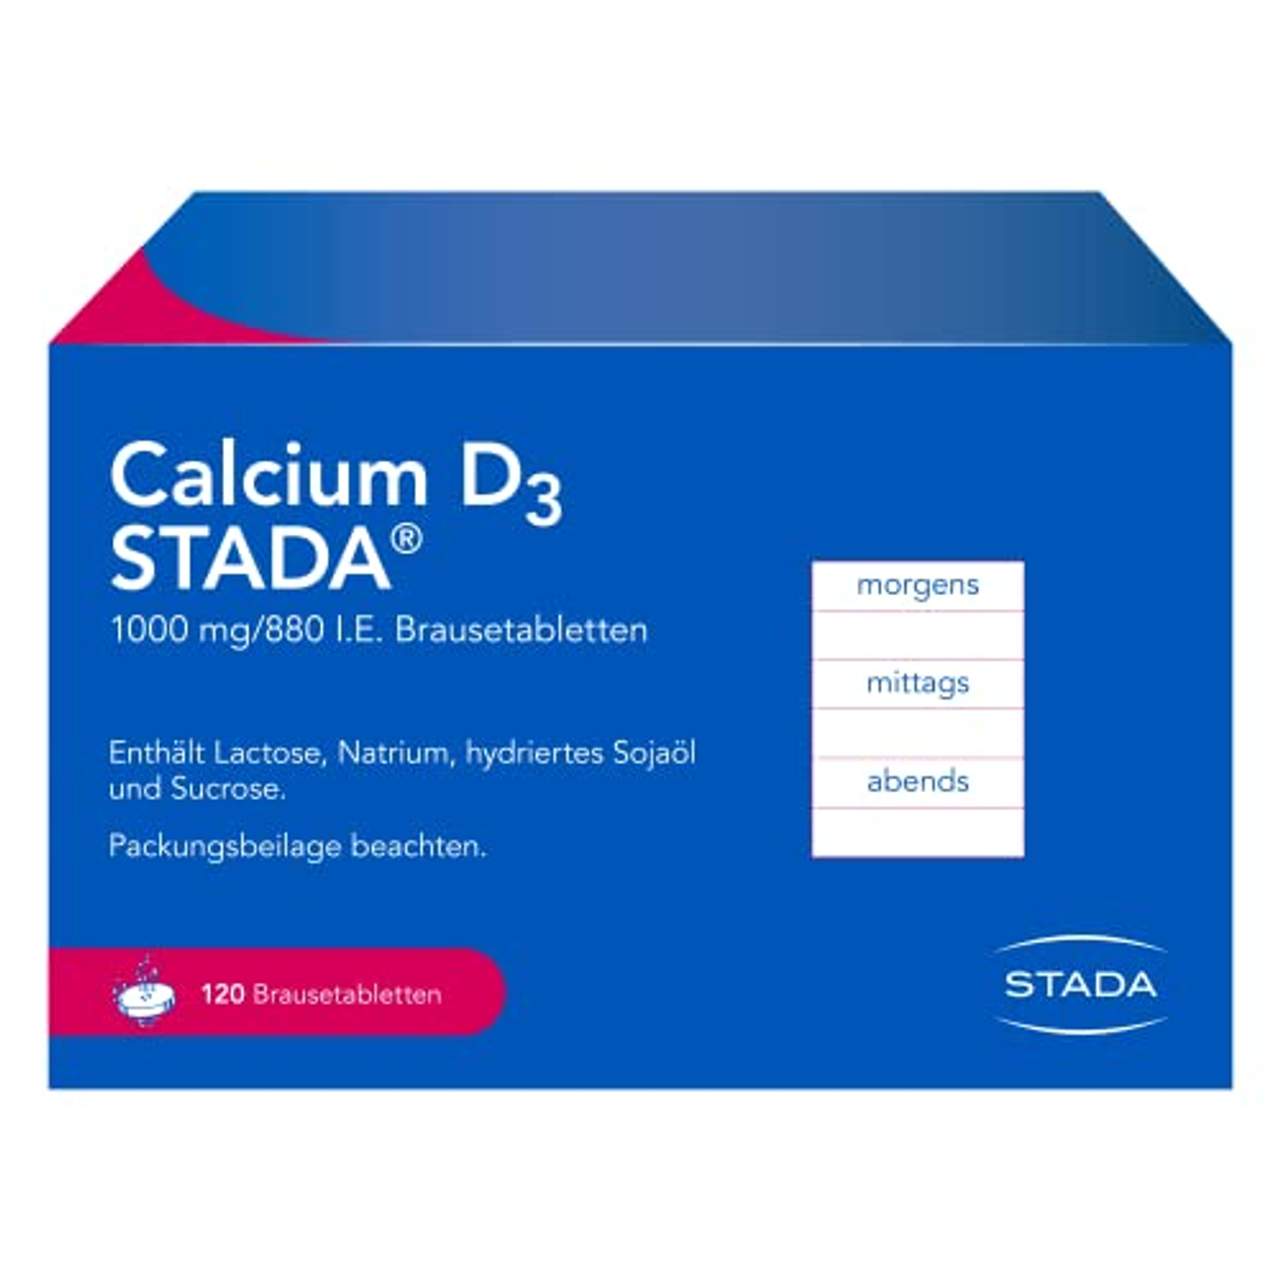 Calcium D3 STADA 1000 mg/880 I.E